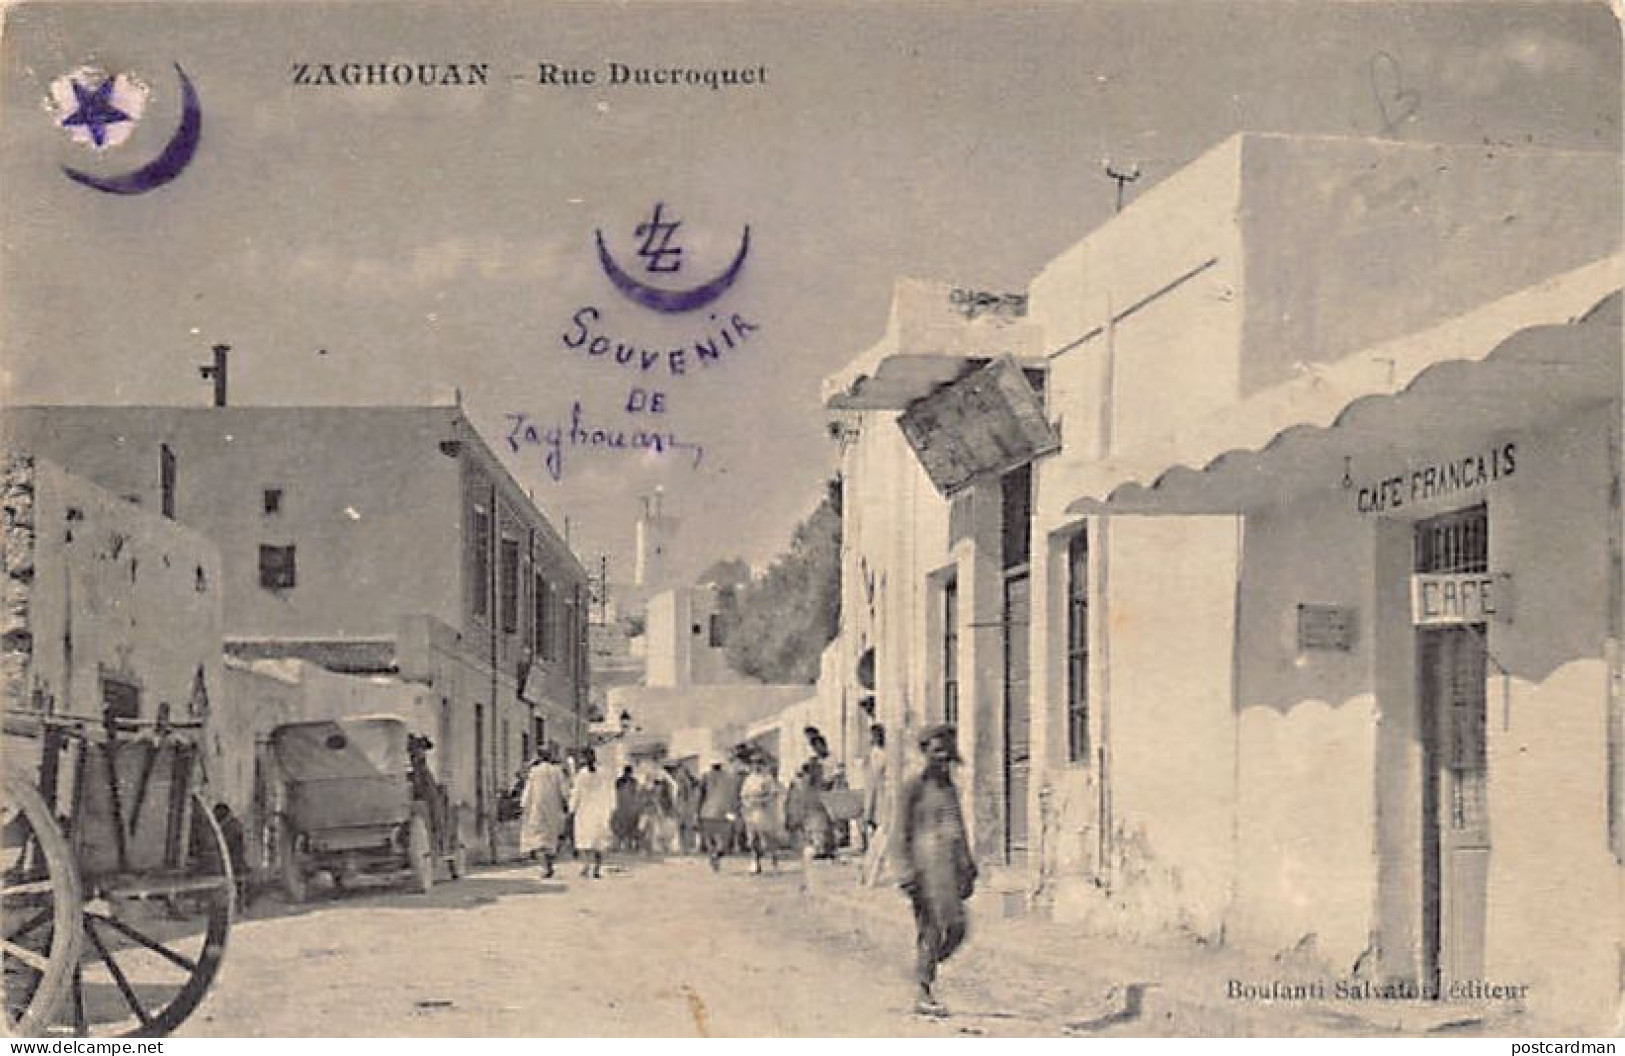 Tunisie - ZAGHOUAN - Rue Ducroquet - Café Français - Ed. Salvatori  - Tunisia